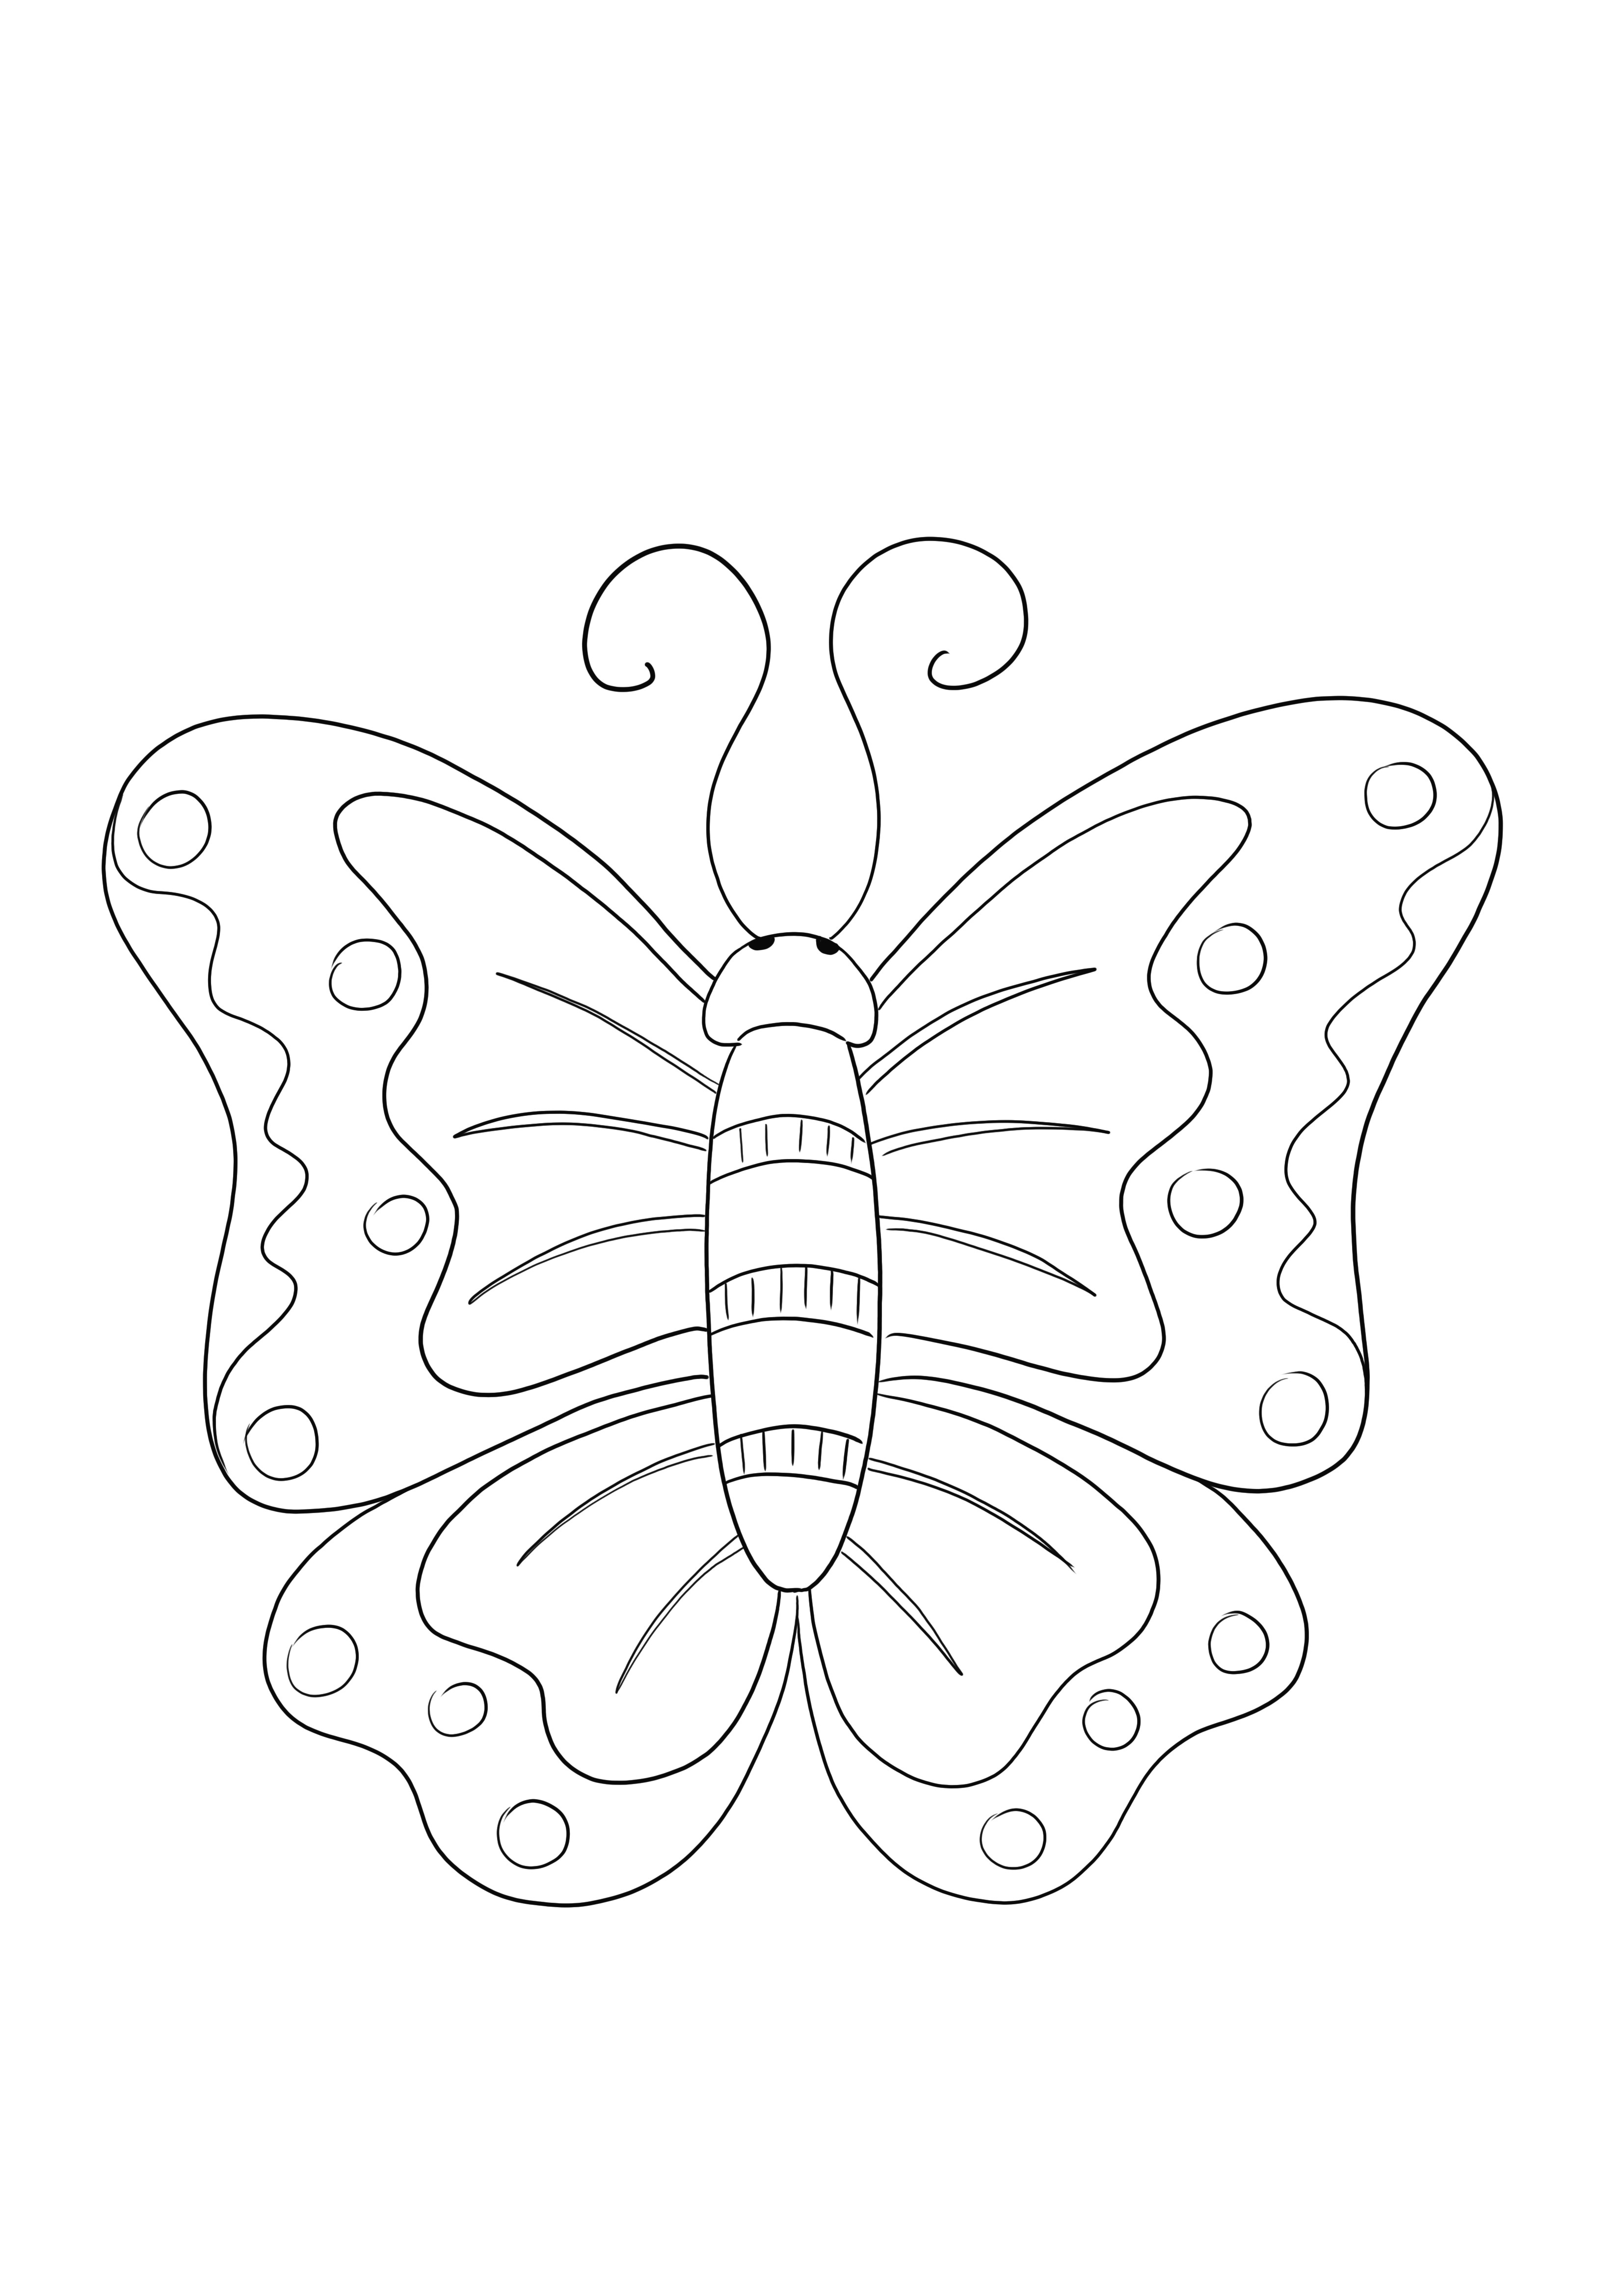 蝶の無料ぬりえ - 簡単に印刷して、子供たちが昆虫について学ぶために使用します